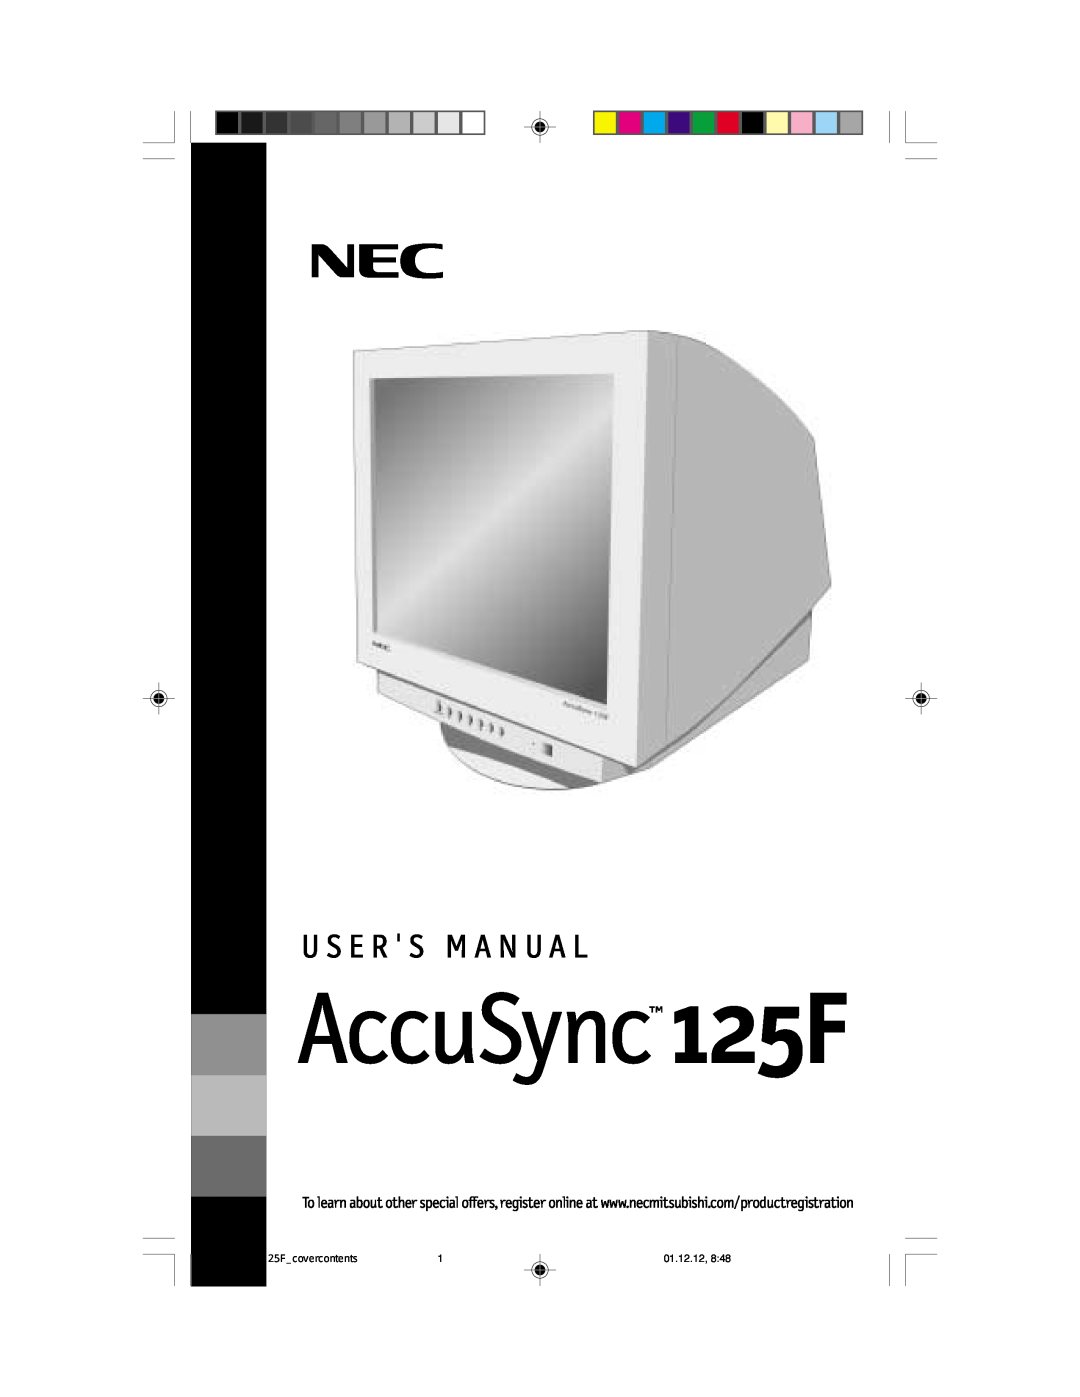 NEC user manual AccuSync 125F, U S E R S M A N U A L, 01.12.12 